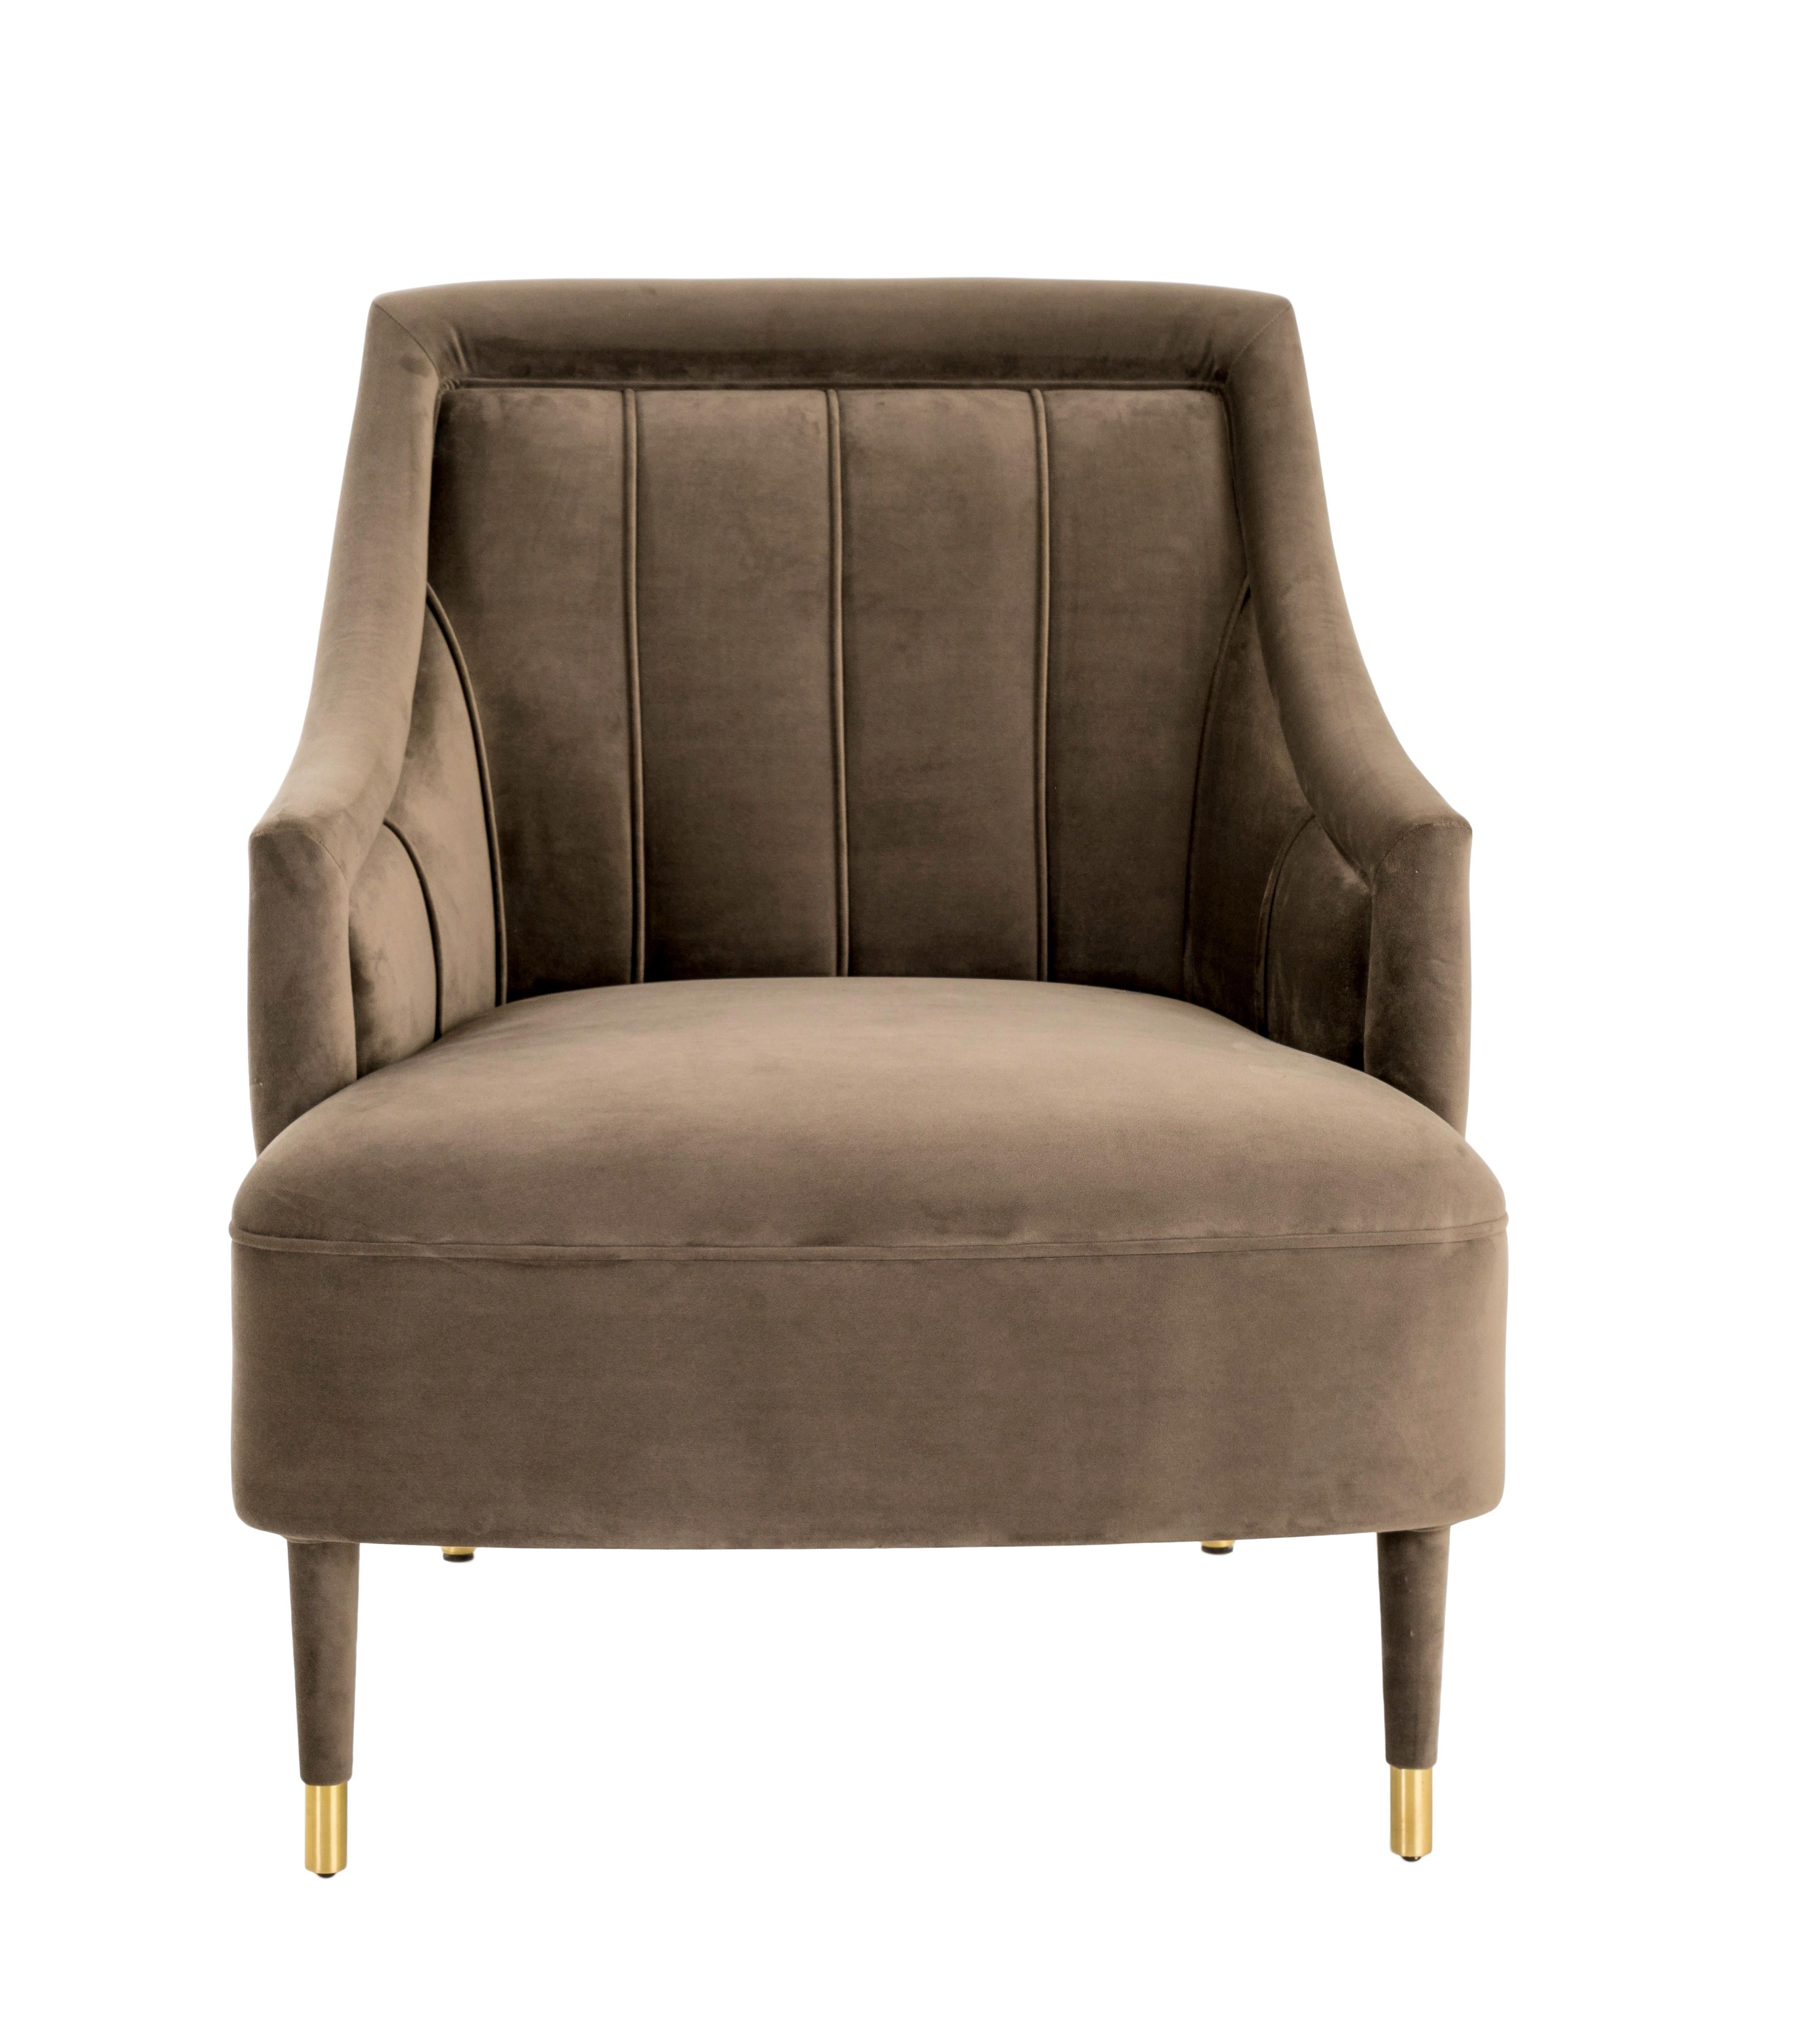 Grâce à ses détails sophistiqués, le fauteuil CORDOBA s'adapte à toutes les inspirations de décoration intérieure luxueuse et cosmopolite. Les pieds doublés se terminent par de belles pointes en laiton antique. Disponible dans une large gamme de